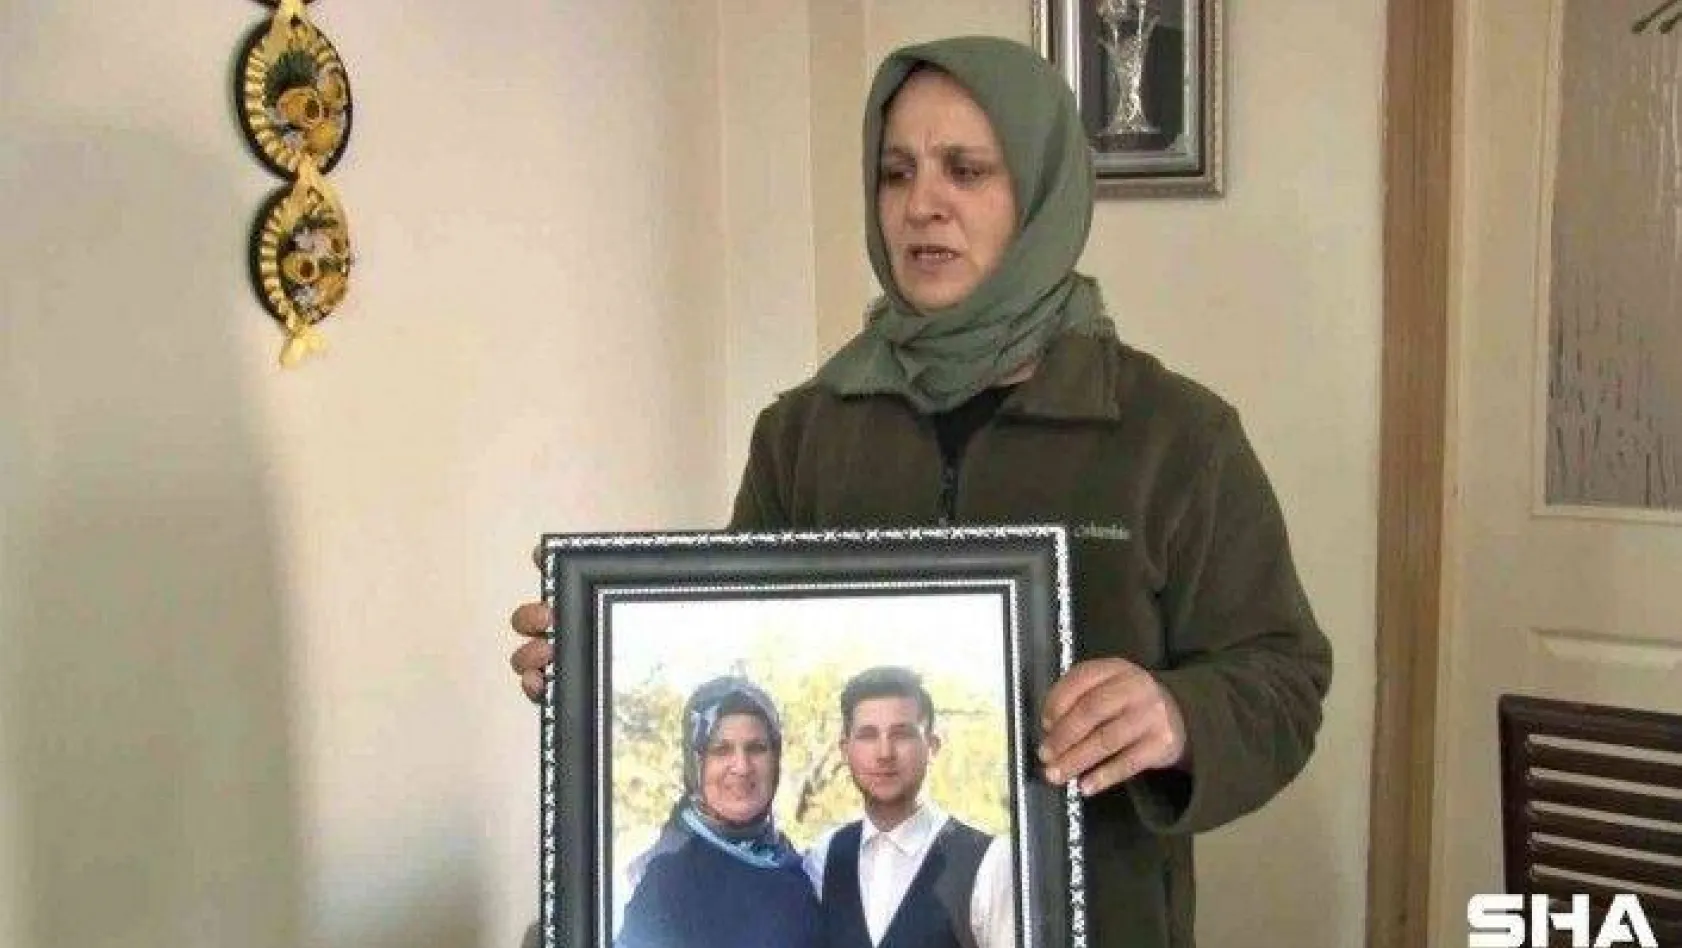 Kadıköy'de 'yan baktın' kavgasında öldürülen gencin ailesi konuştu